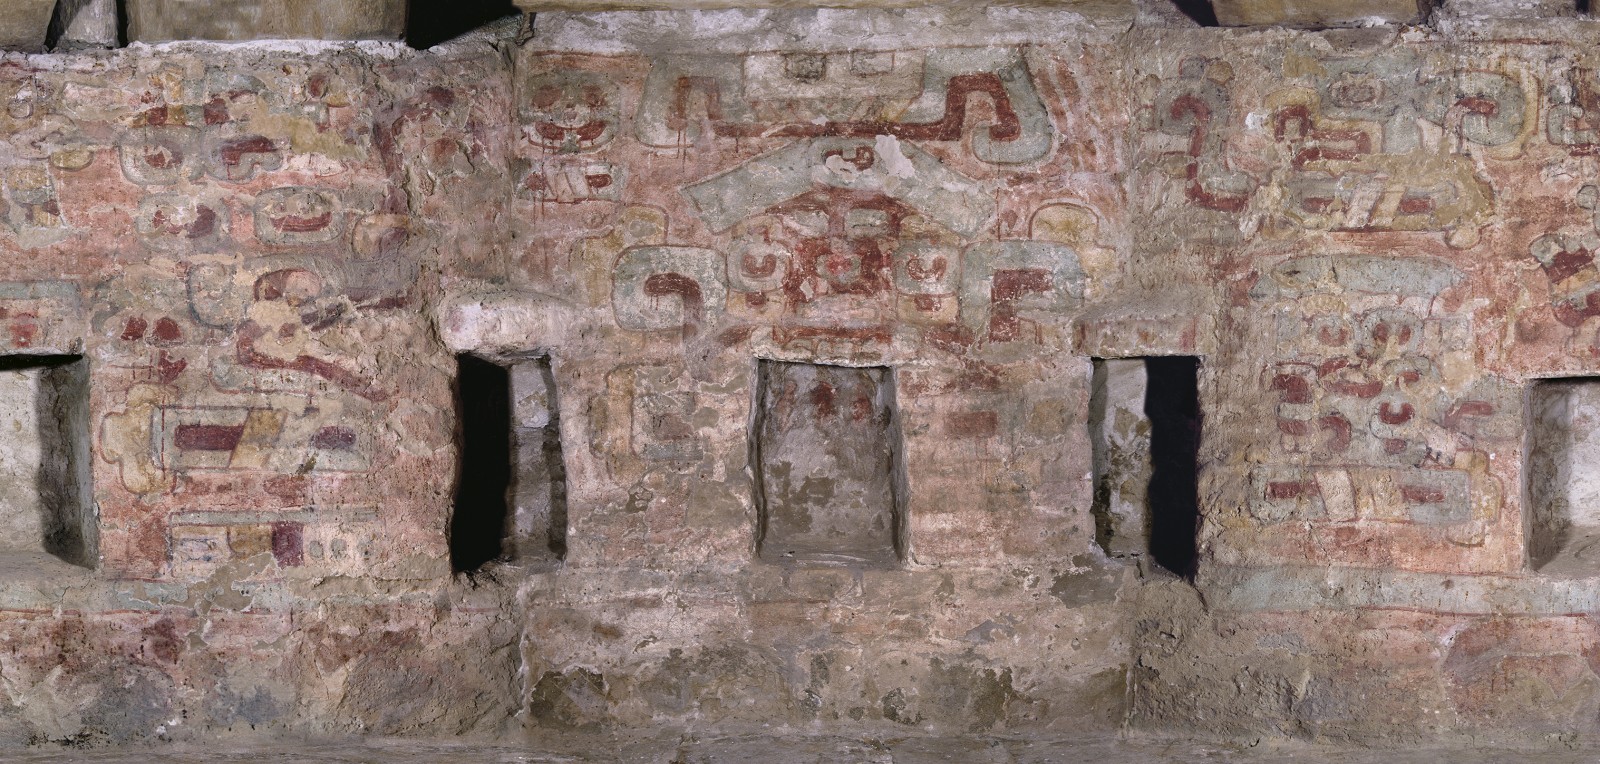 Mural de la Tumba 104, desplegado